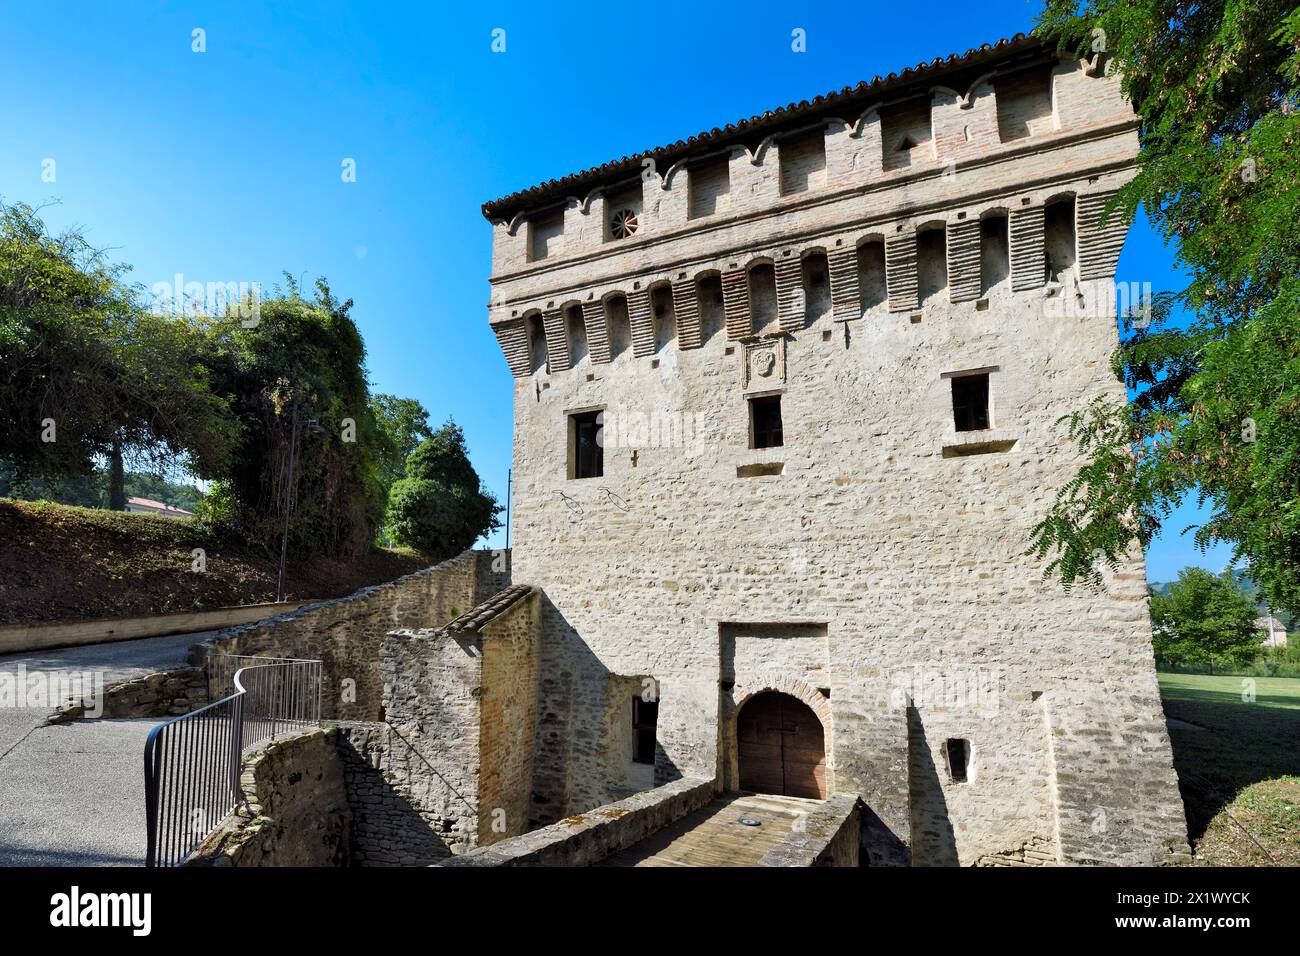 Die Mühle von Papst Sixtus V. Montalto Delle Marche. Marken. Italien Stockfoto